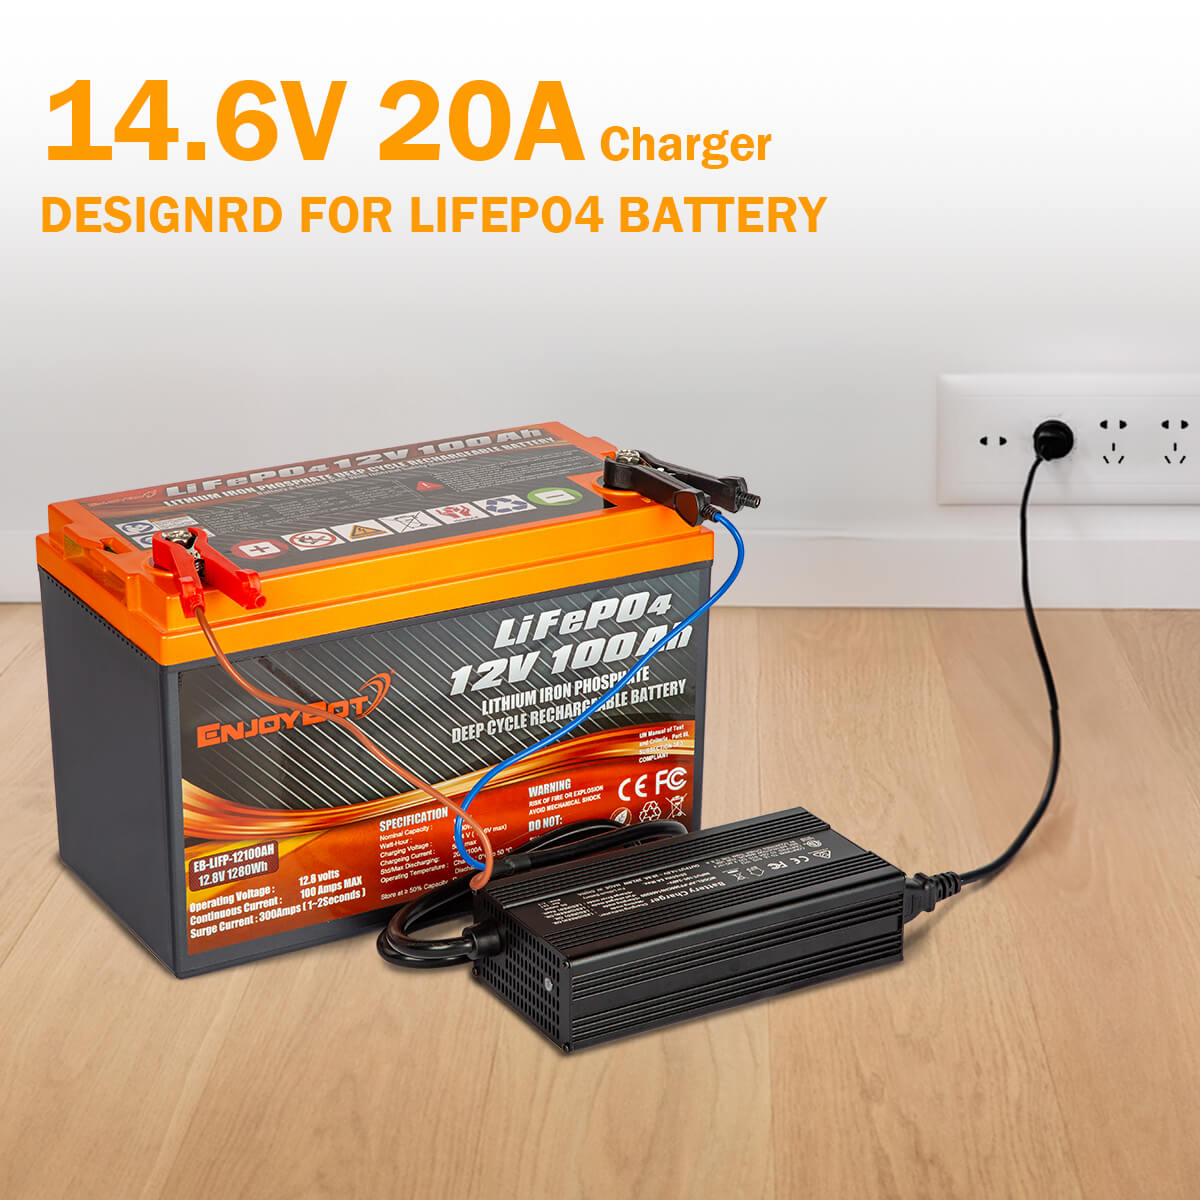 Chargeur de batterie LiFePO 4 14.6V 20A